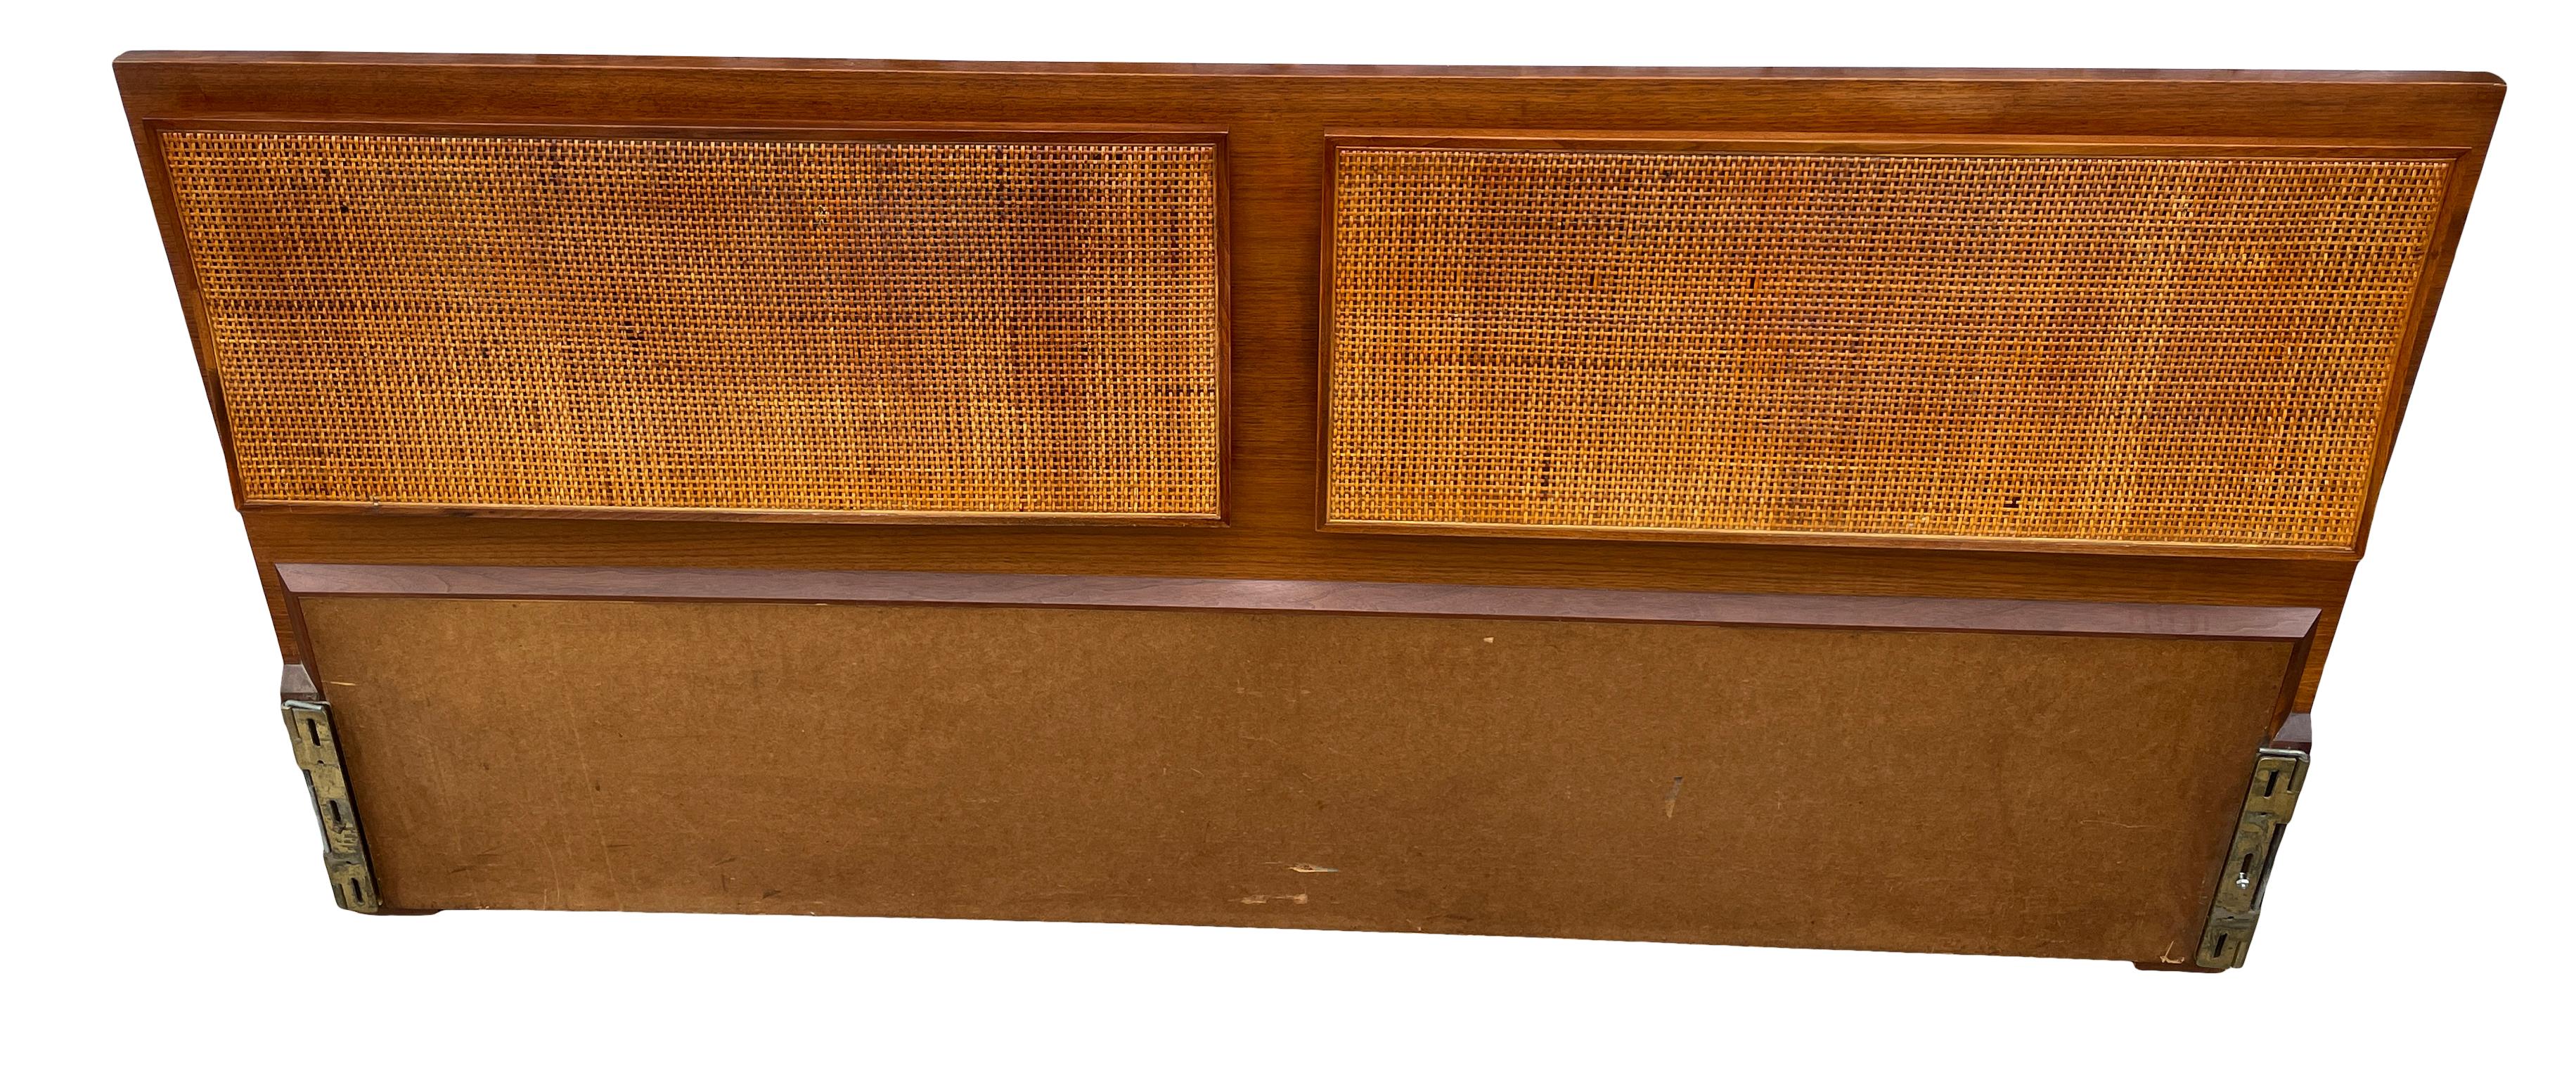 Schöne Paul McCobb für Calvin Möbel Bett Kopfteil # 7703 in wunderbaren Vintage-Zustand Stock zeigt Patina. Fein ausgearbeitet mit Messingdetails. Passt auf eine Matratze der Größe King. Bett Kopfteil nur kein Metallbett Rahmen. Lässt sich leicht an